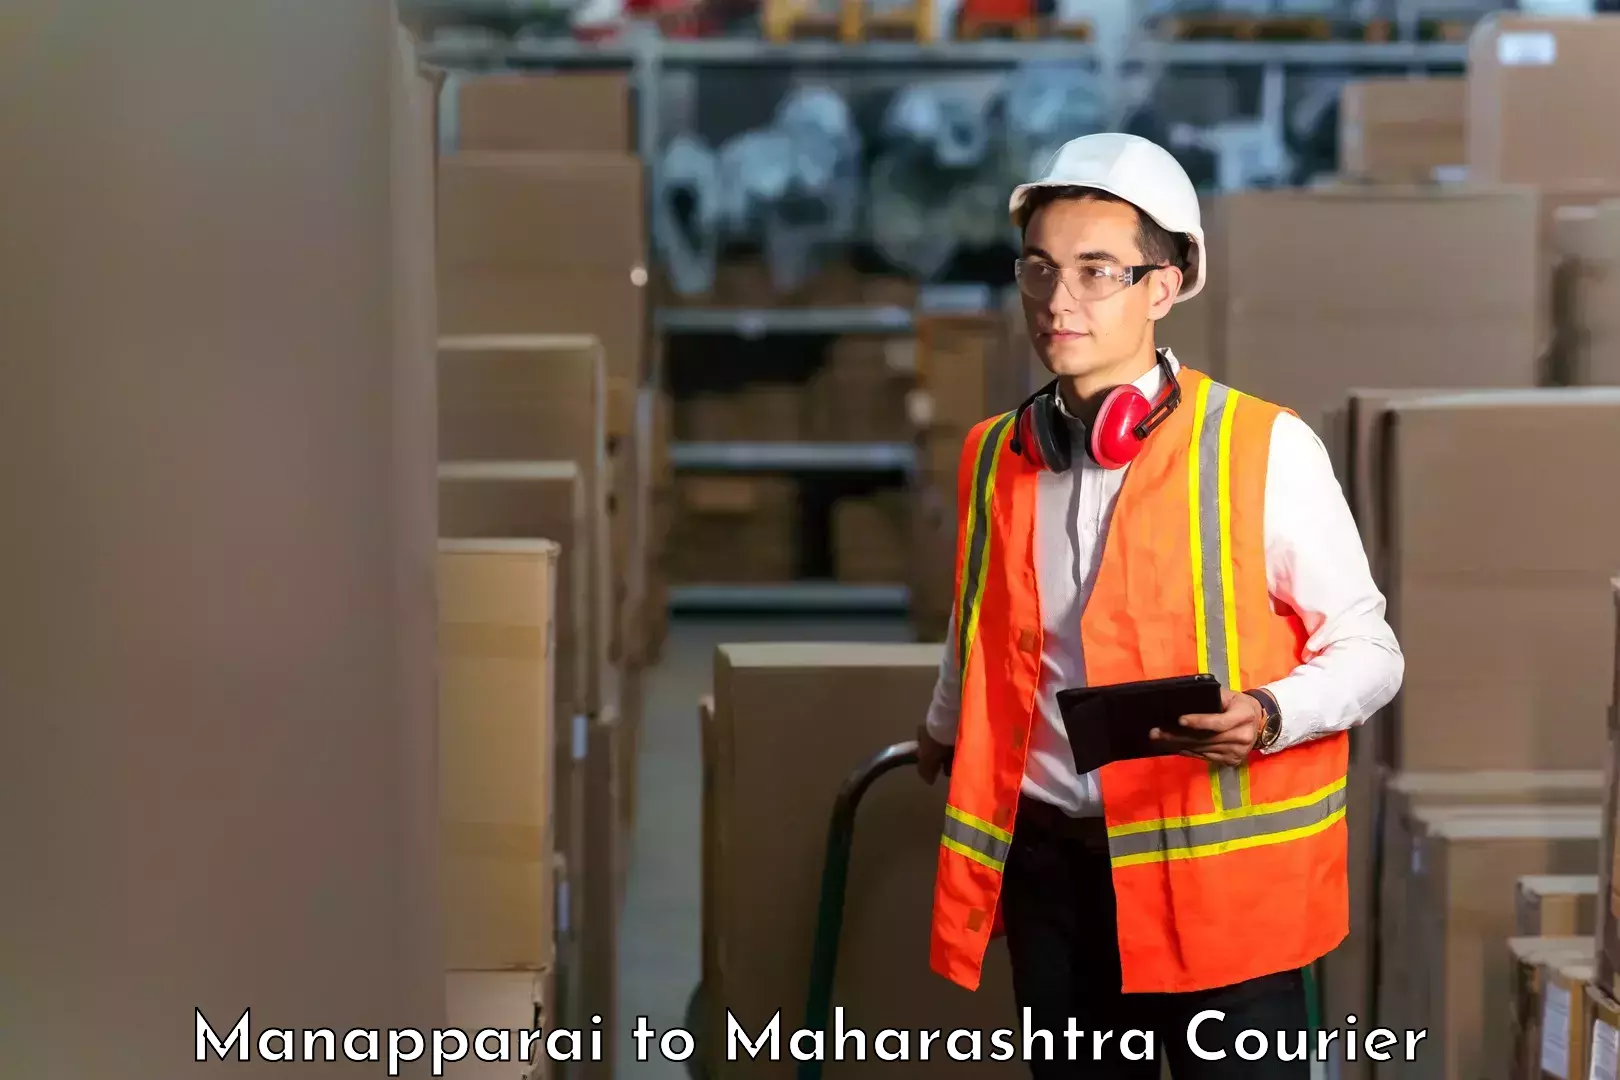 Quality courier partnerships Manapparai to Maharashtra